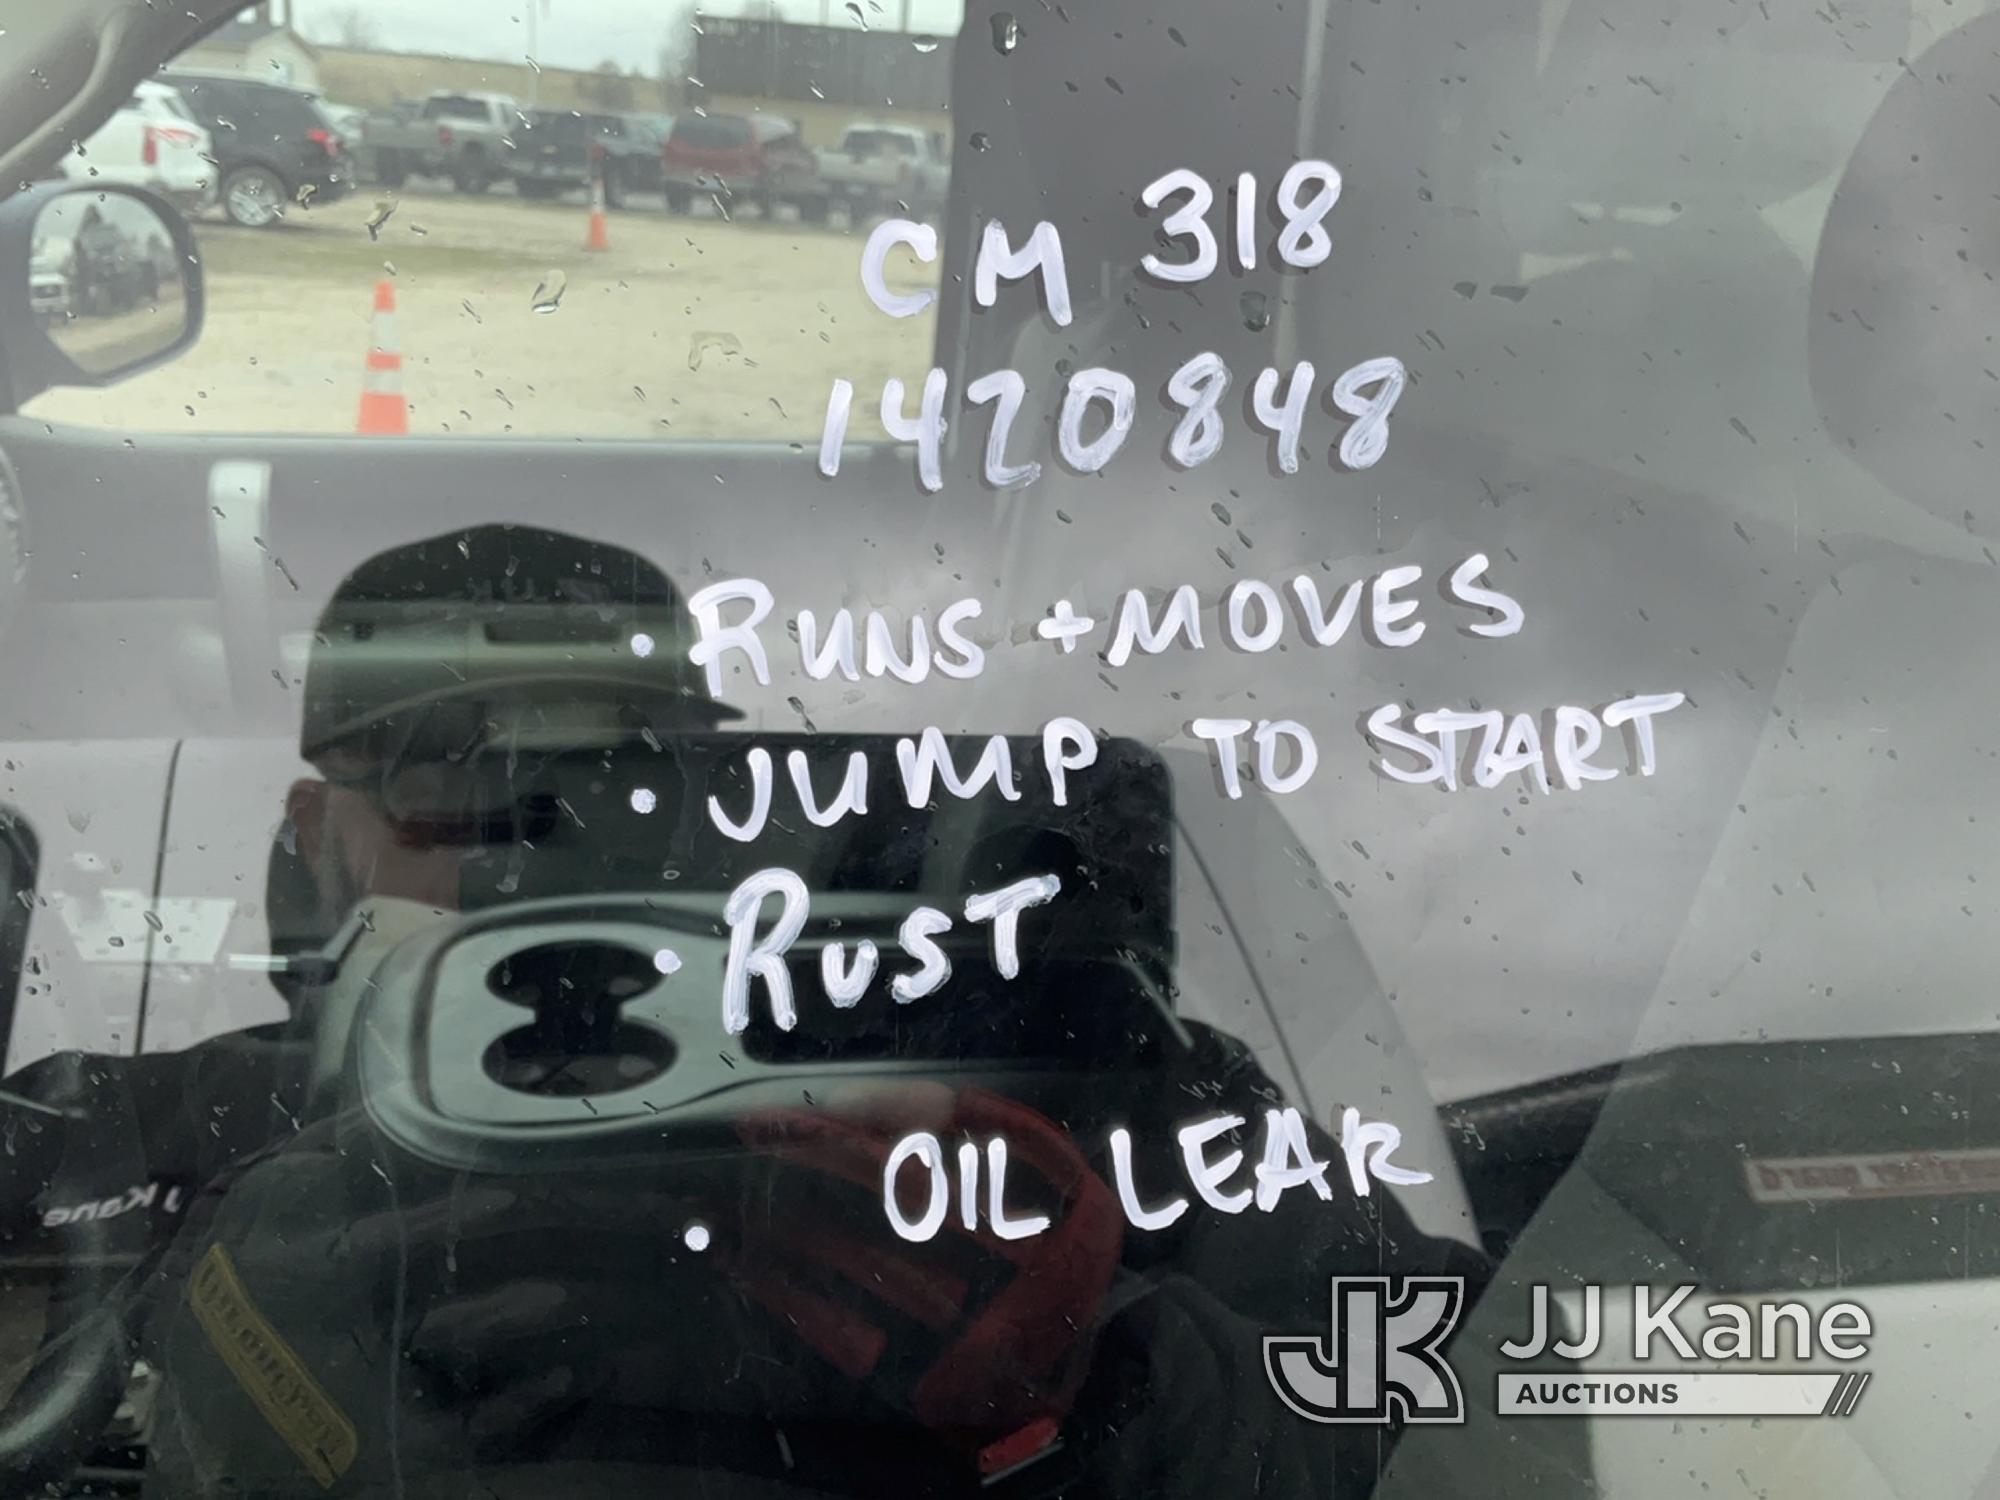 (Charlotte, MI) 2009 Chevrolet Silverado 1500 Pickup Truck Runs & Moves) (Jump To Start, Oil Leak, R